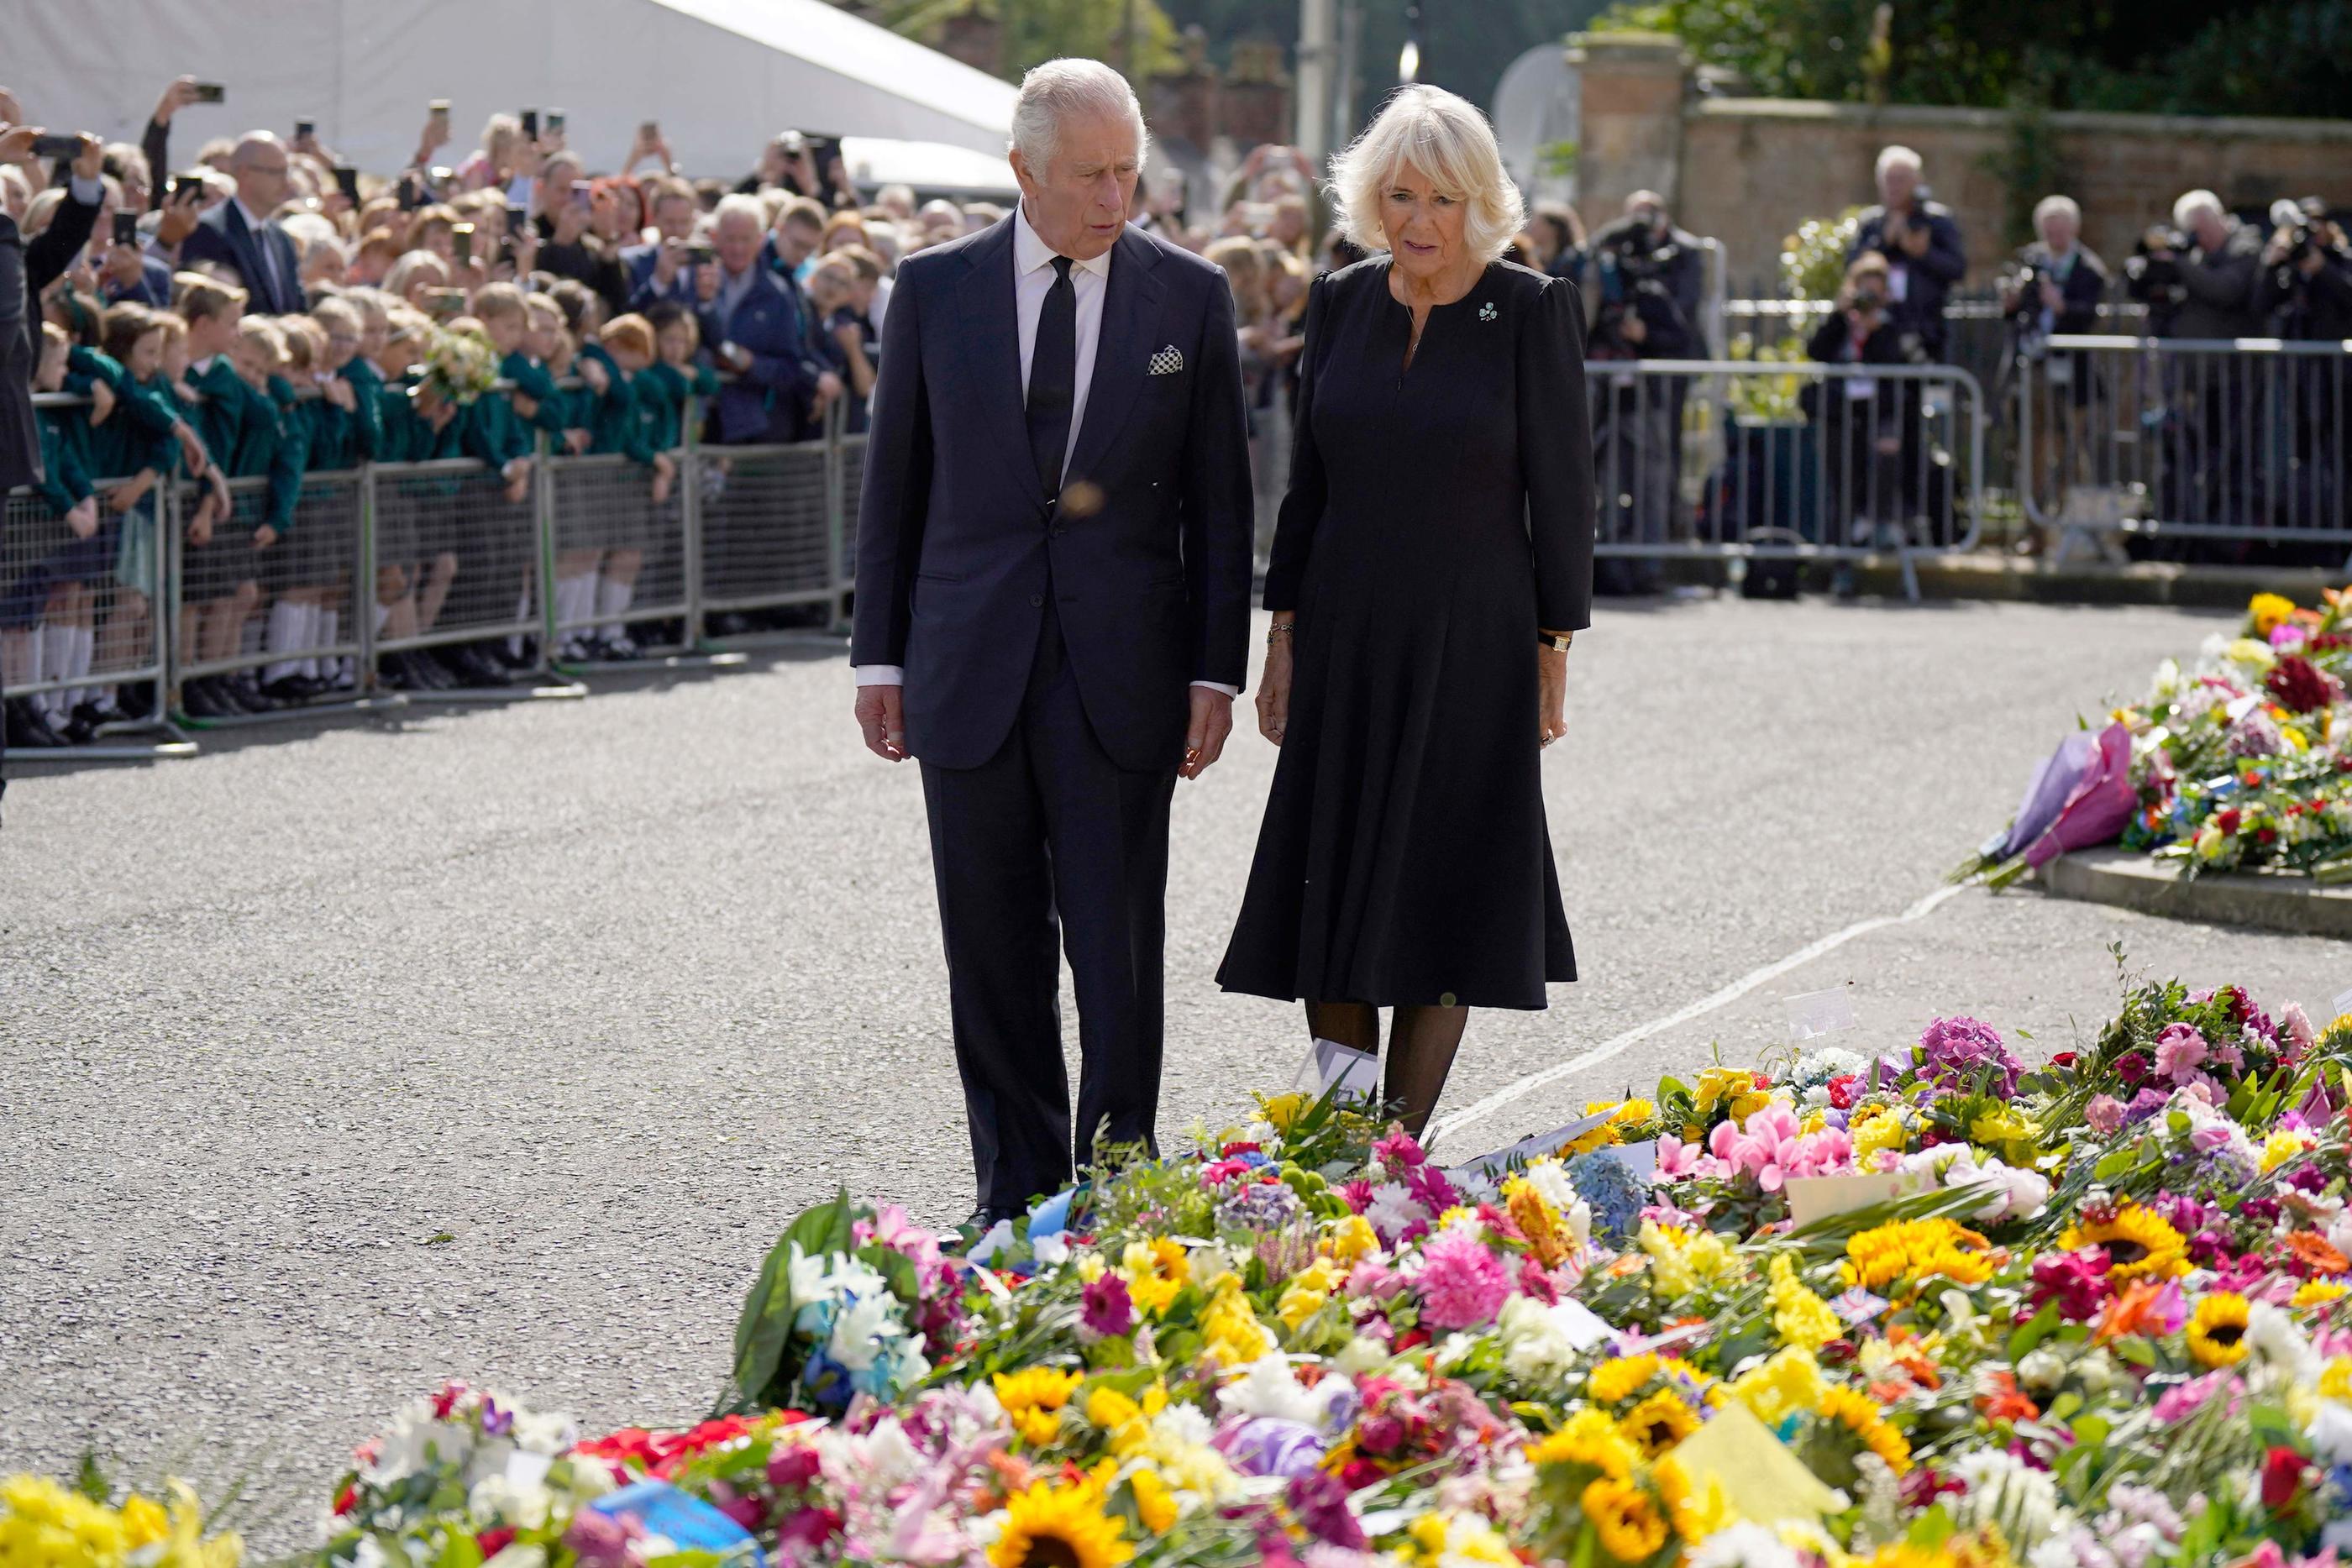 Le roi britannique Charles III et la reine consort Camilla à l'extérieur du château de Hillsborough, à Belfast, le 13 septembre 2022. AFP/Niall Carson